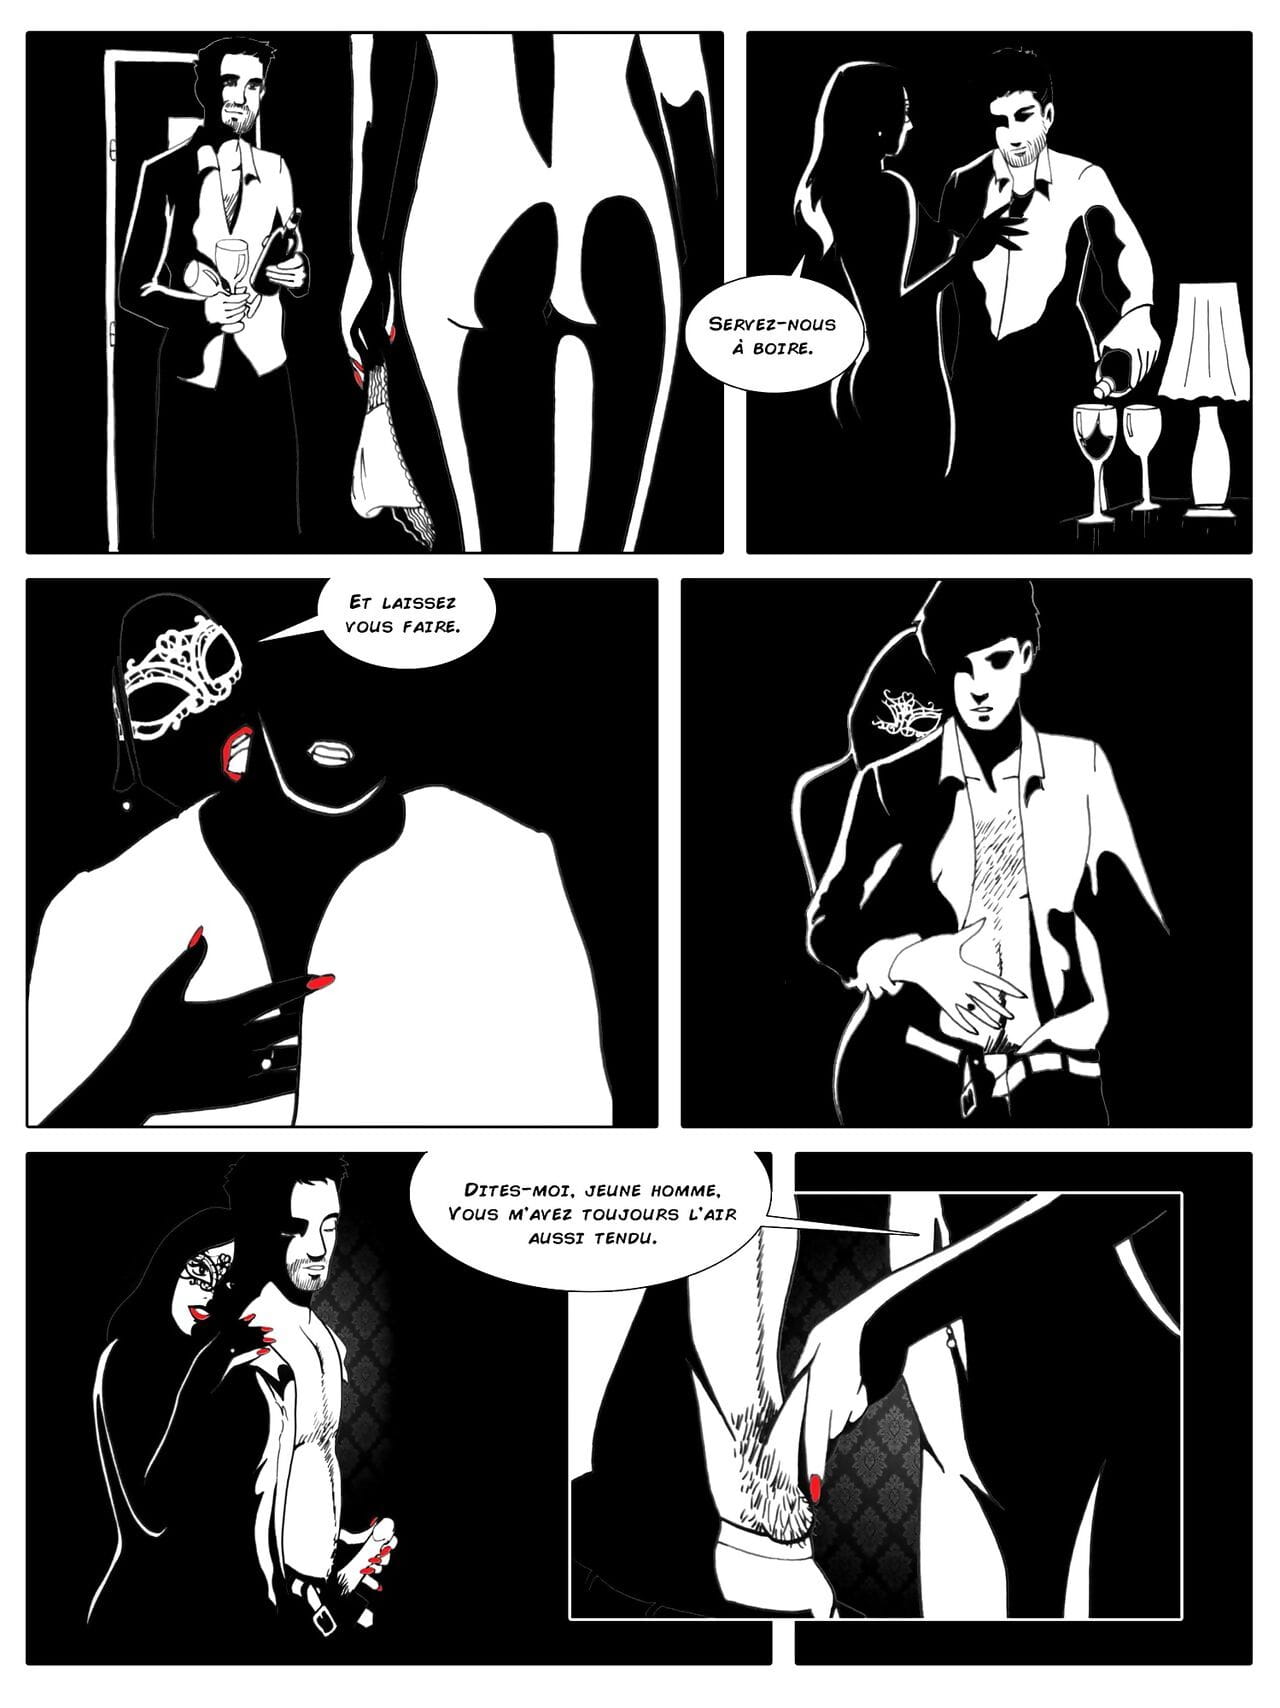 amabilia volumen 1 Parte 2 page 1